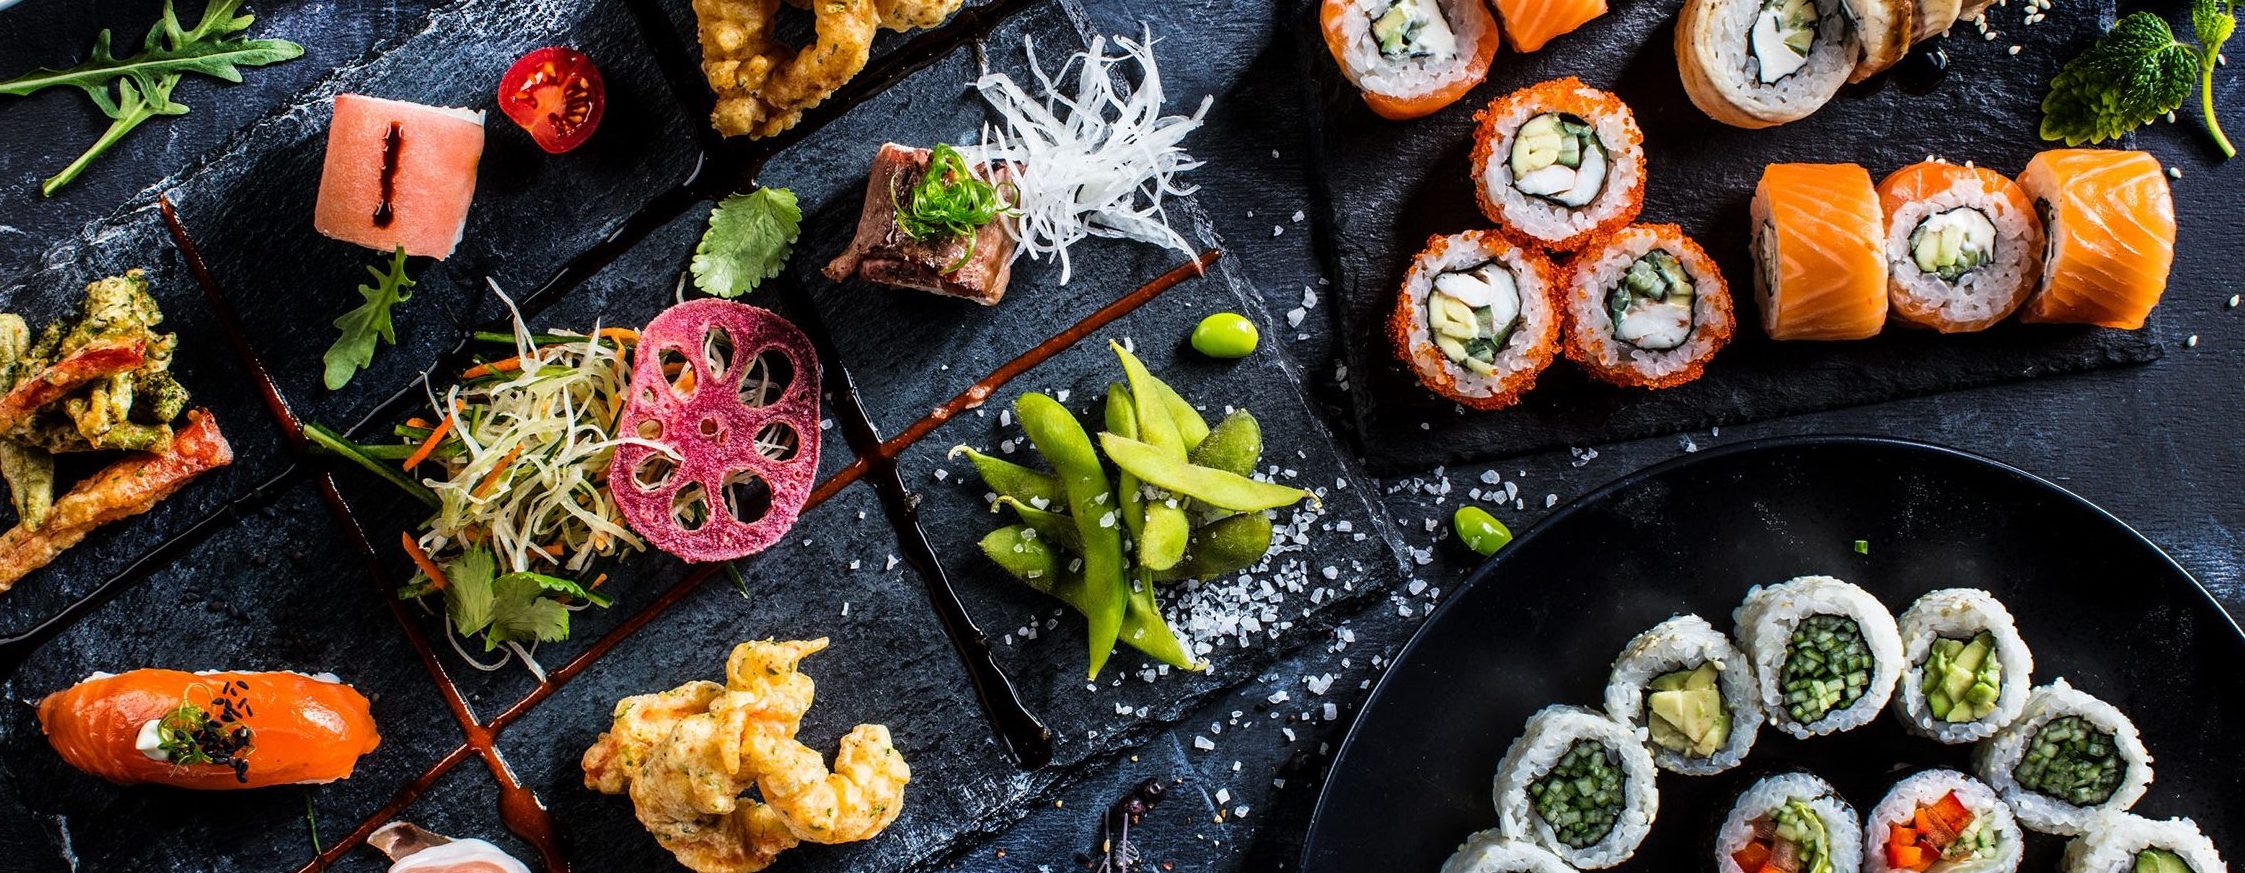 Фуд съемка суши - Услуги по фуд съемке для суши